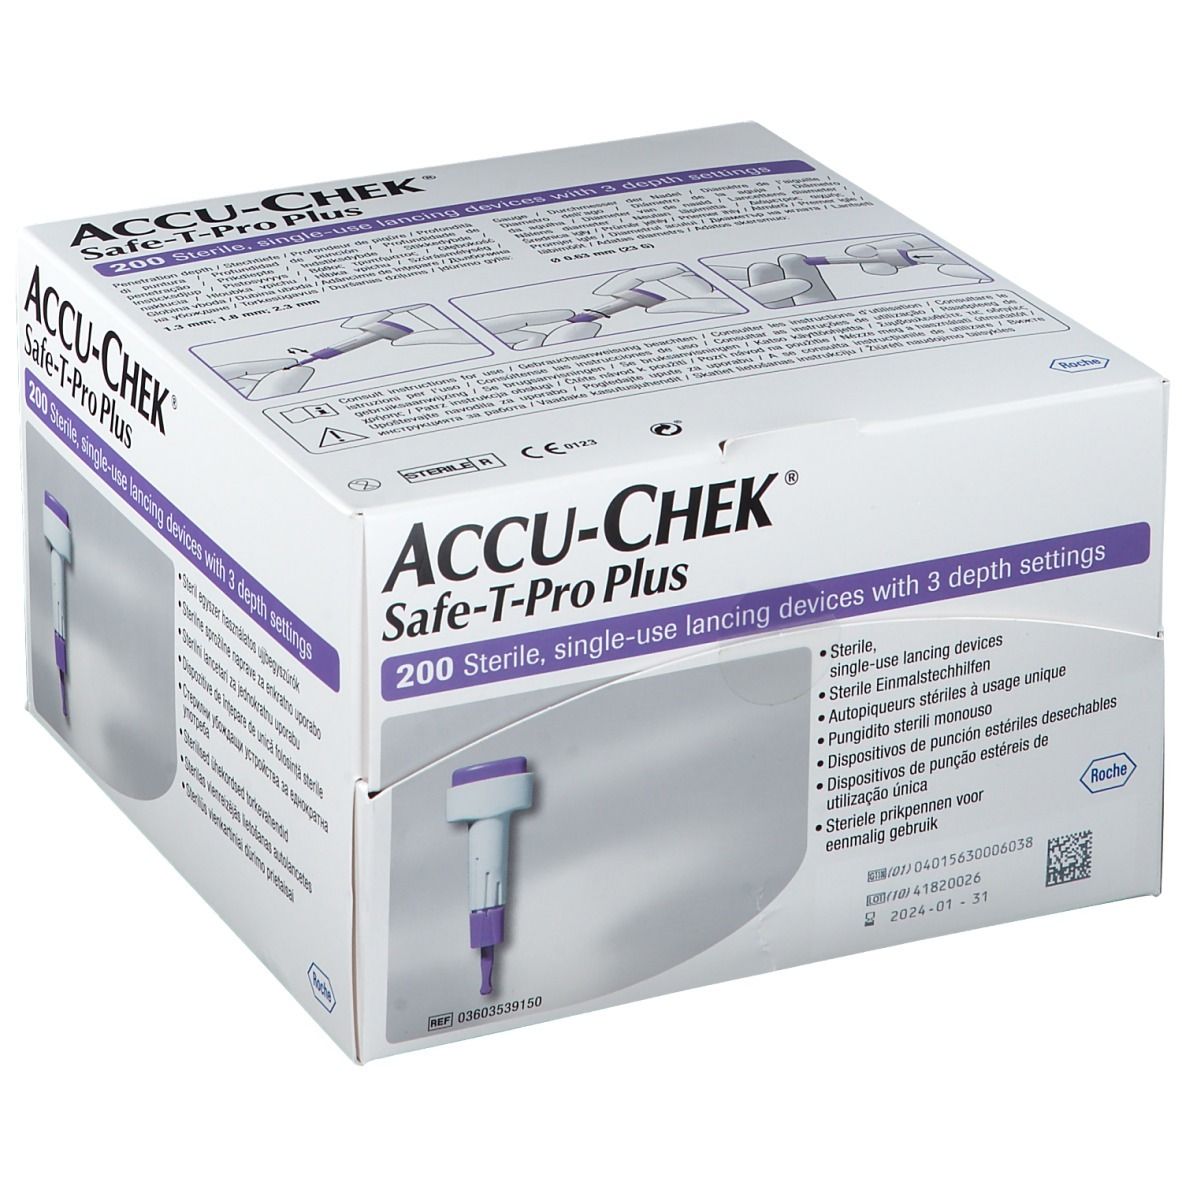 accu-chek-safe-t-pro-plus-usage-unique-lancette-s-BE02406247-p10